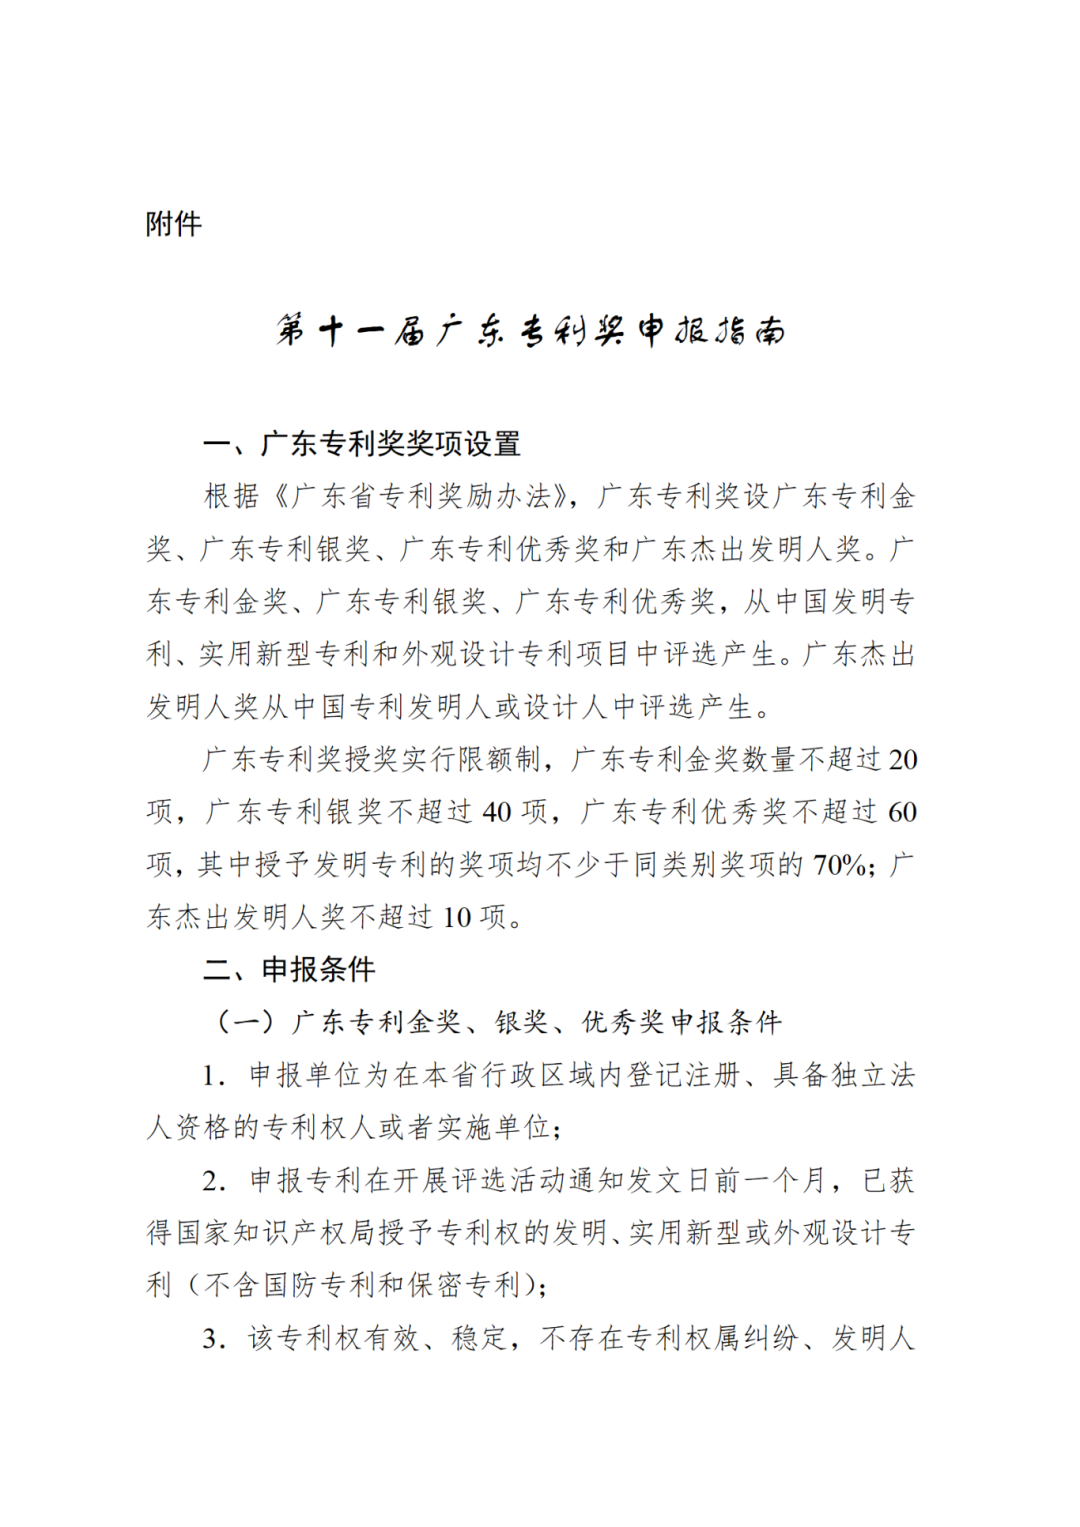 开始申报！第十一届广东专利奖评选正在开展